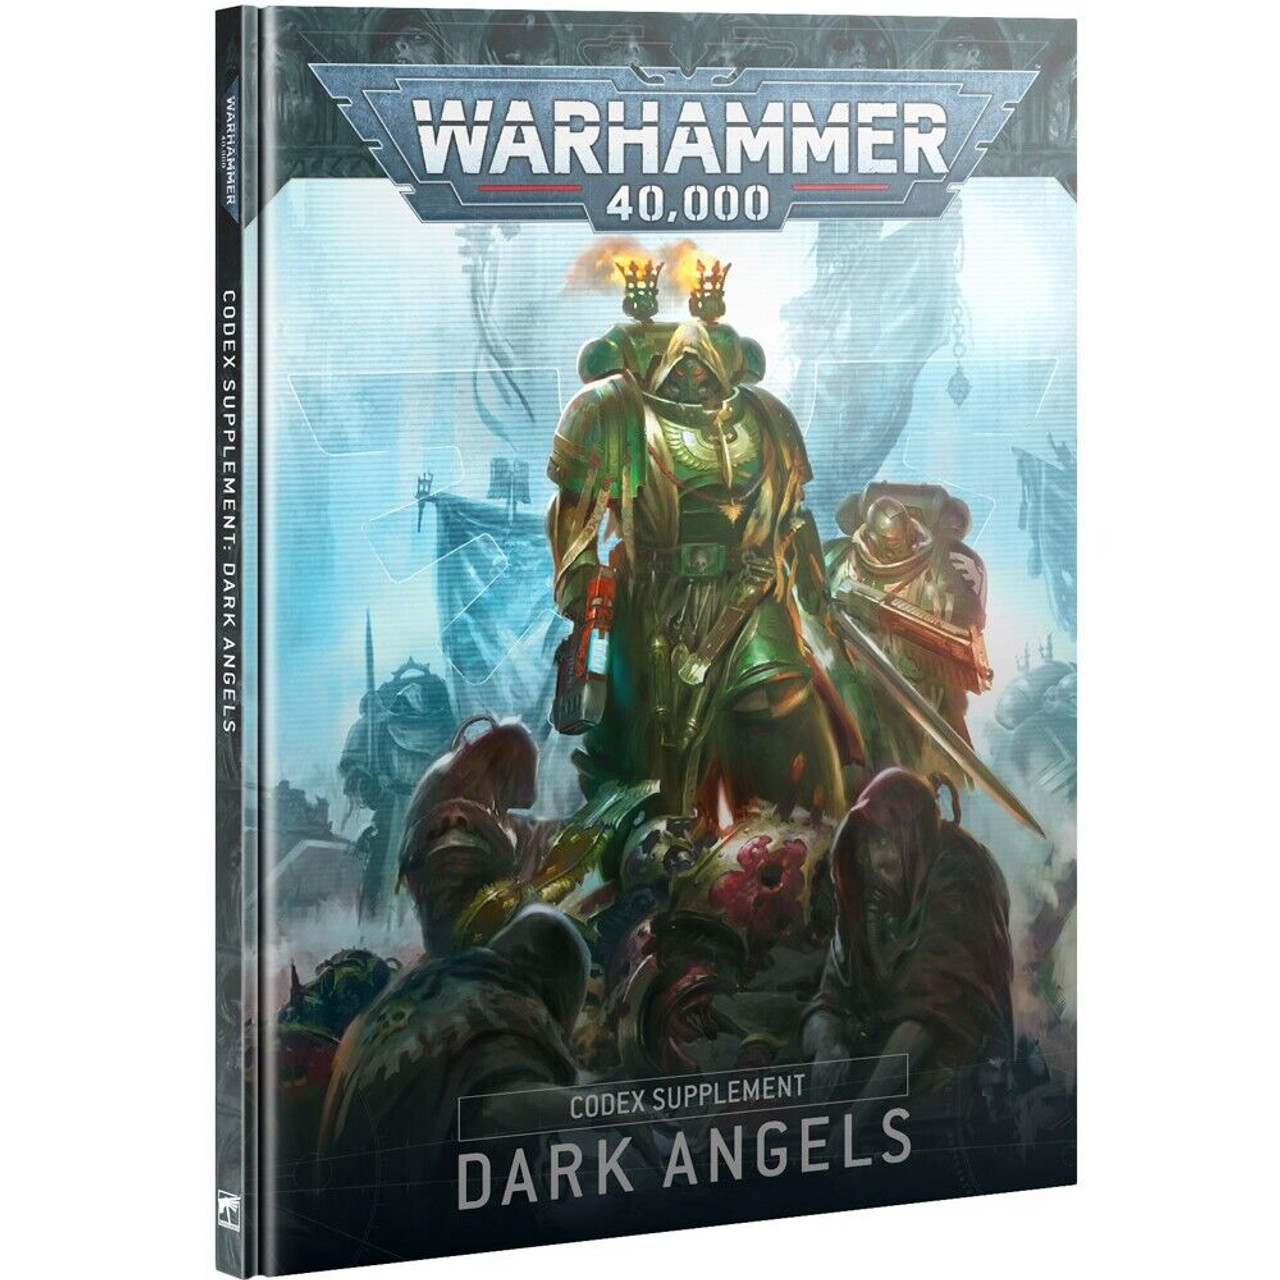 Warhammer 40K: Codex Supplement - Dark Angels